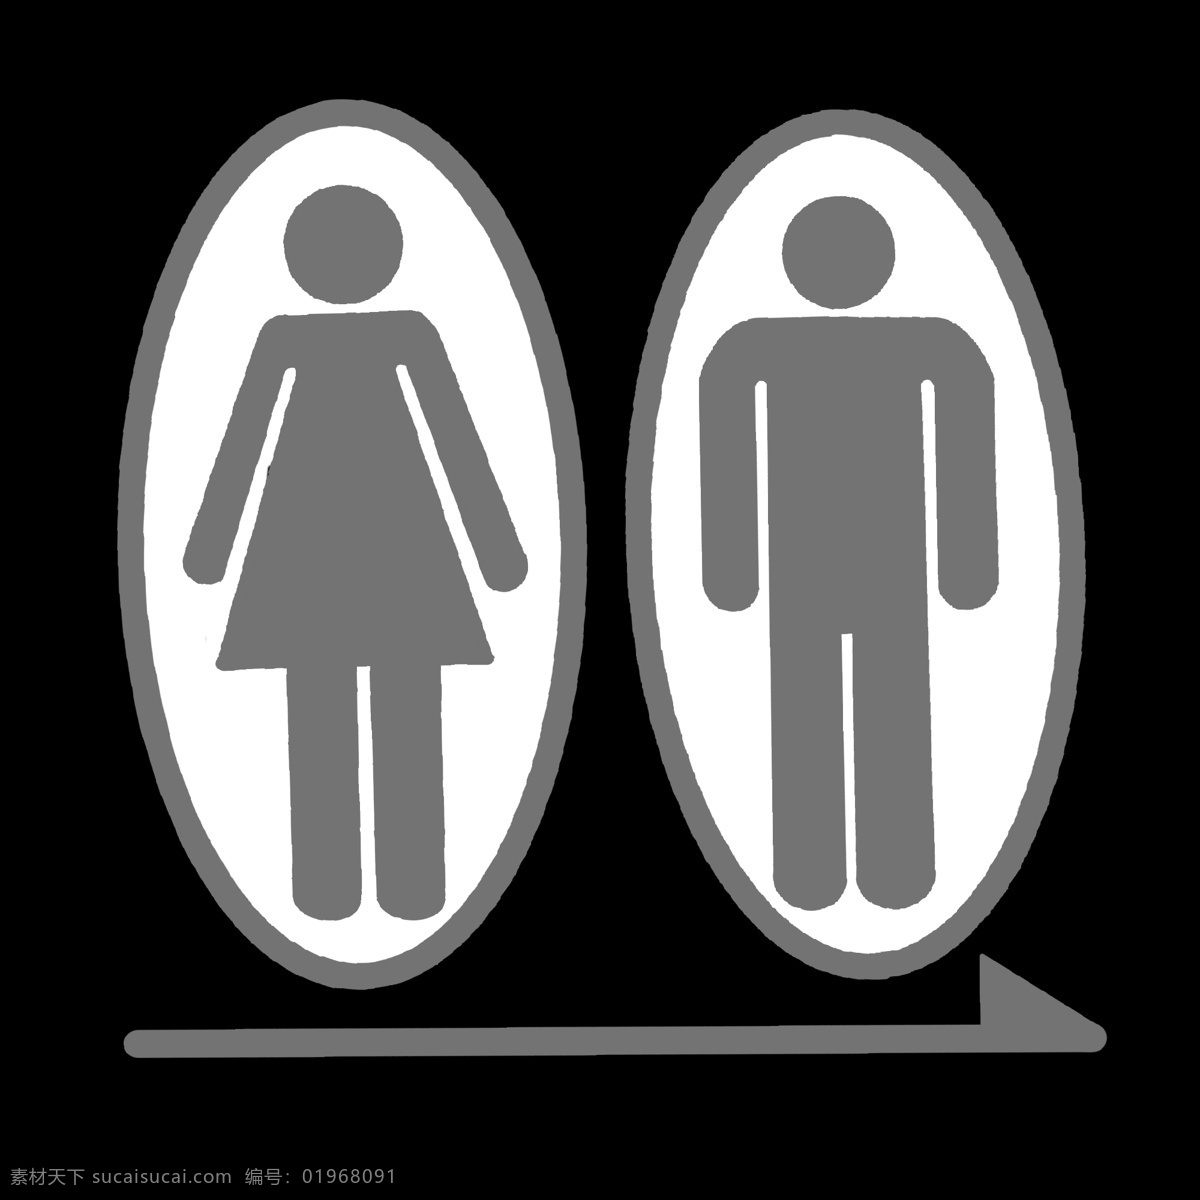 男女 卫生间 小 图标 灰色 暗色 箭头 指向 引路图标 男生 女生 洗手间 公共 设施 矢量图 简洁 卡通 公共场所 专用 图案